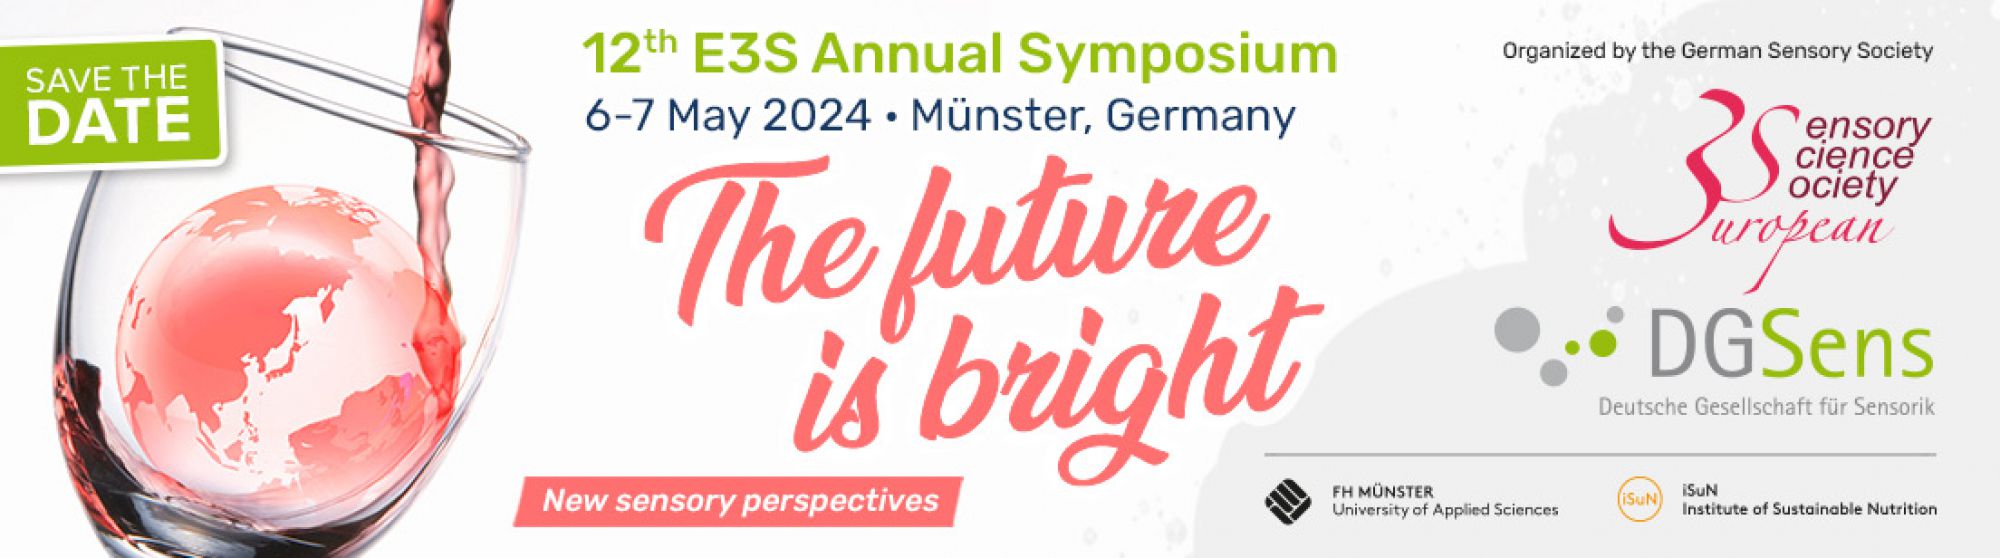 E3S Annual Symposium 2024